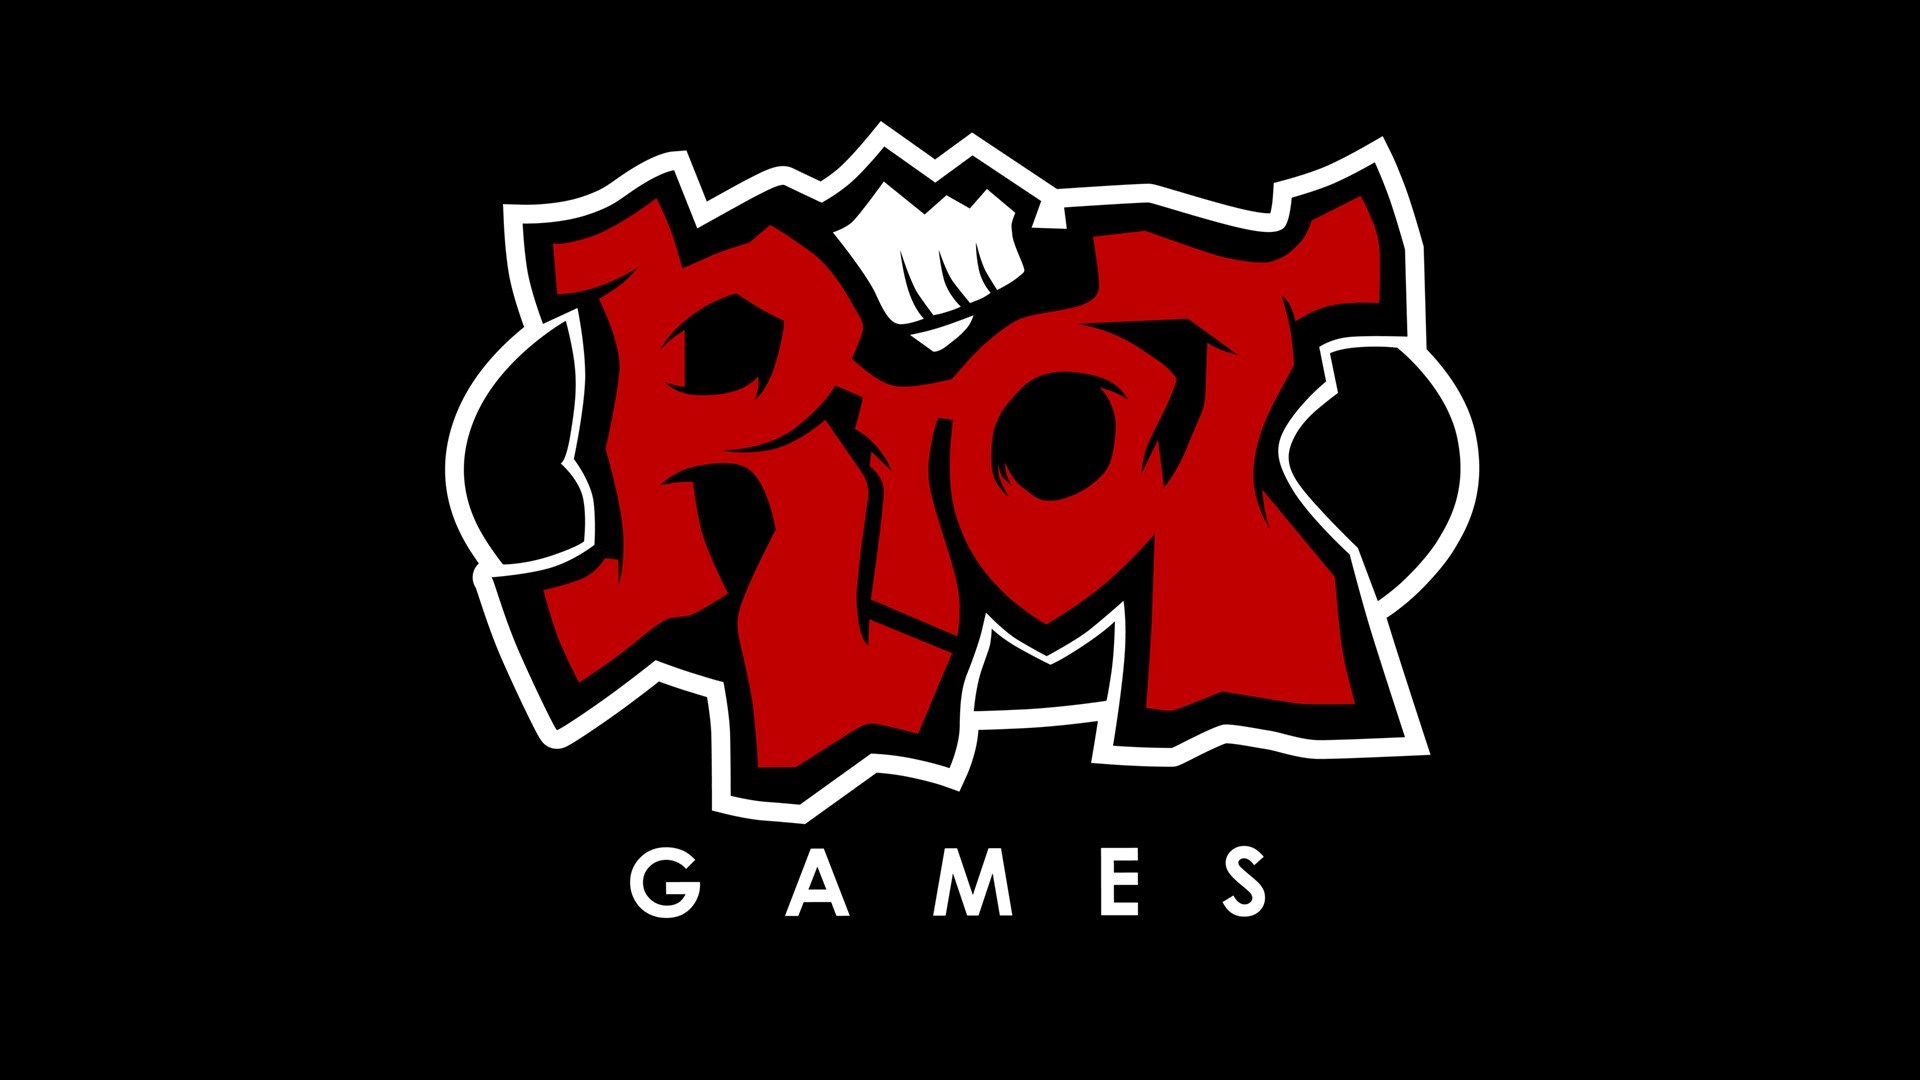 Riot enthüllt neues Logo und startet Medienseite